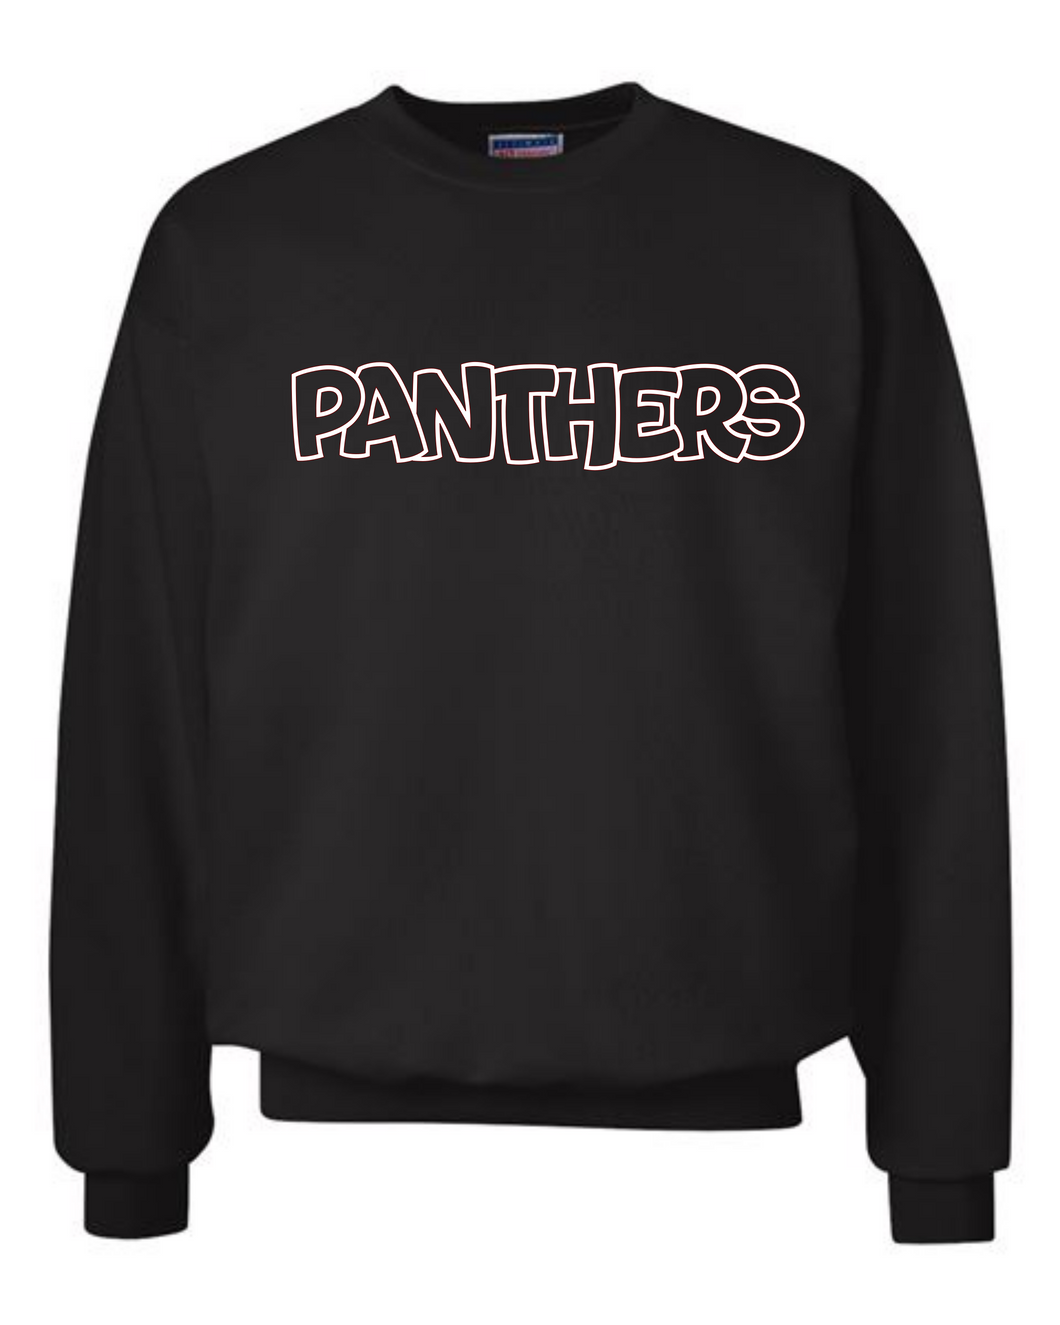 Panthers Sweatshirt